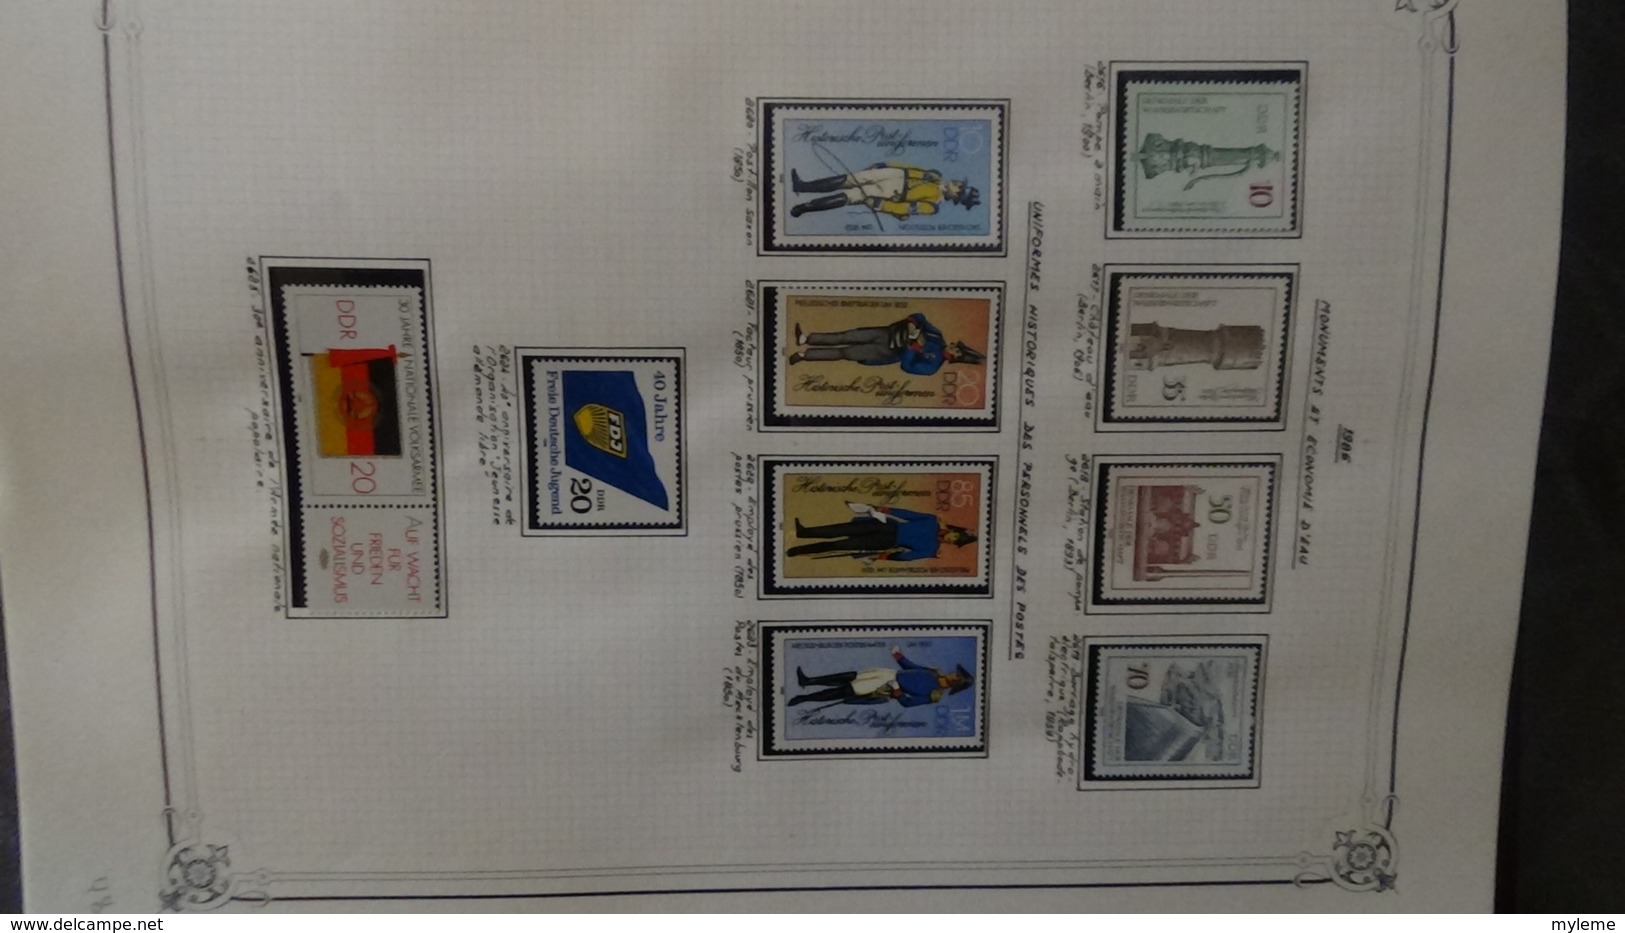 Belle collection d'ALLEMAGNE blocs et timbres de 1973 à 1988 ** à completer !!!. A saisir !!!